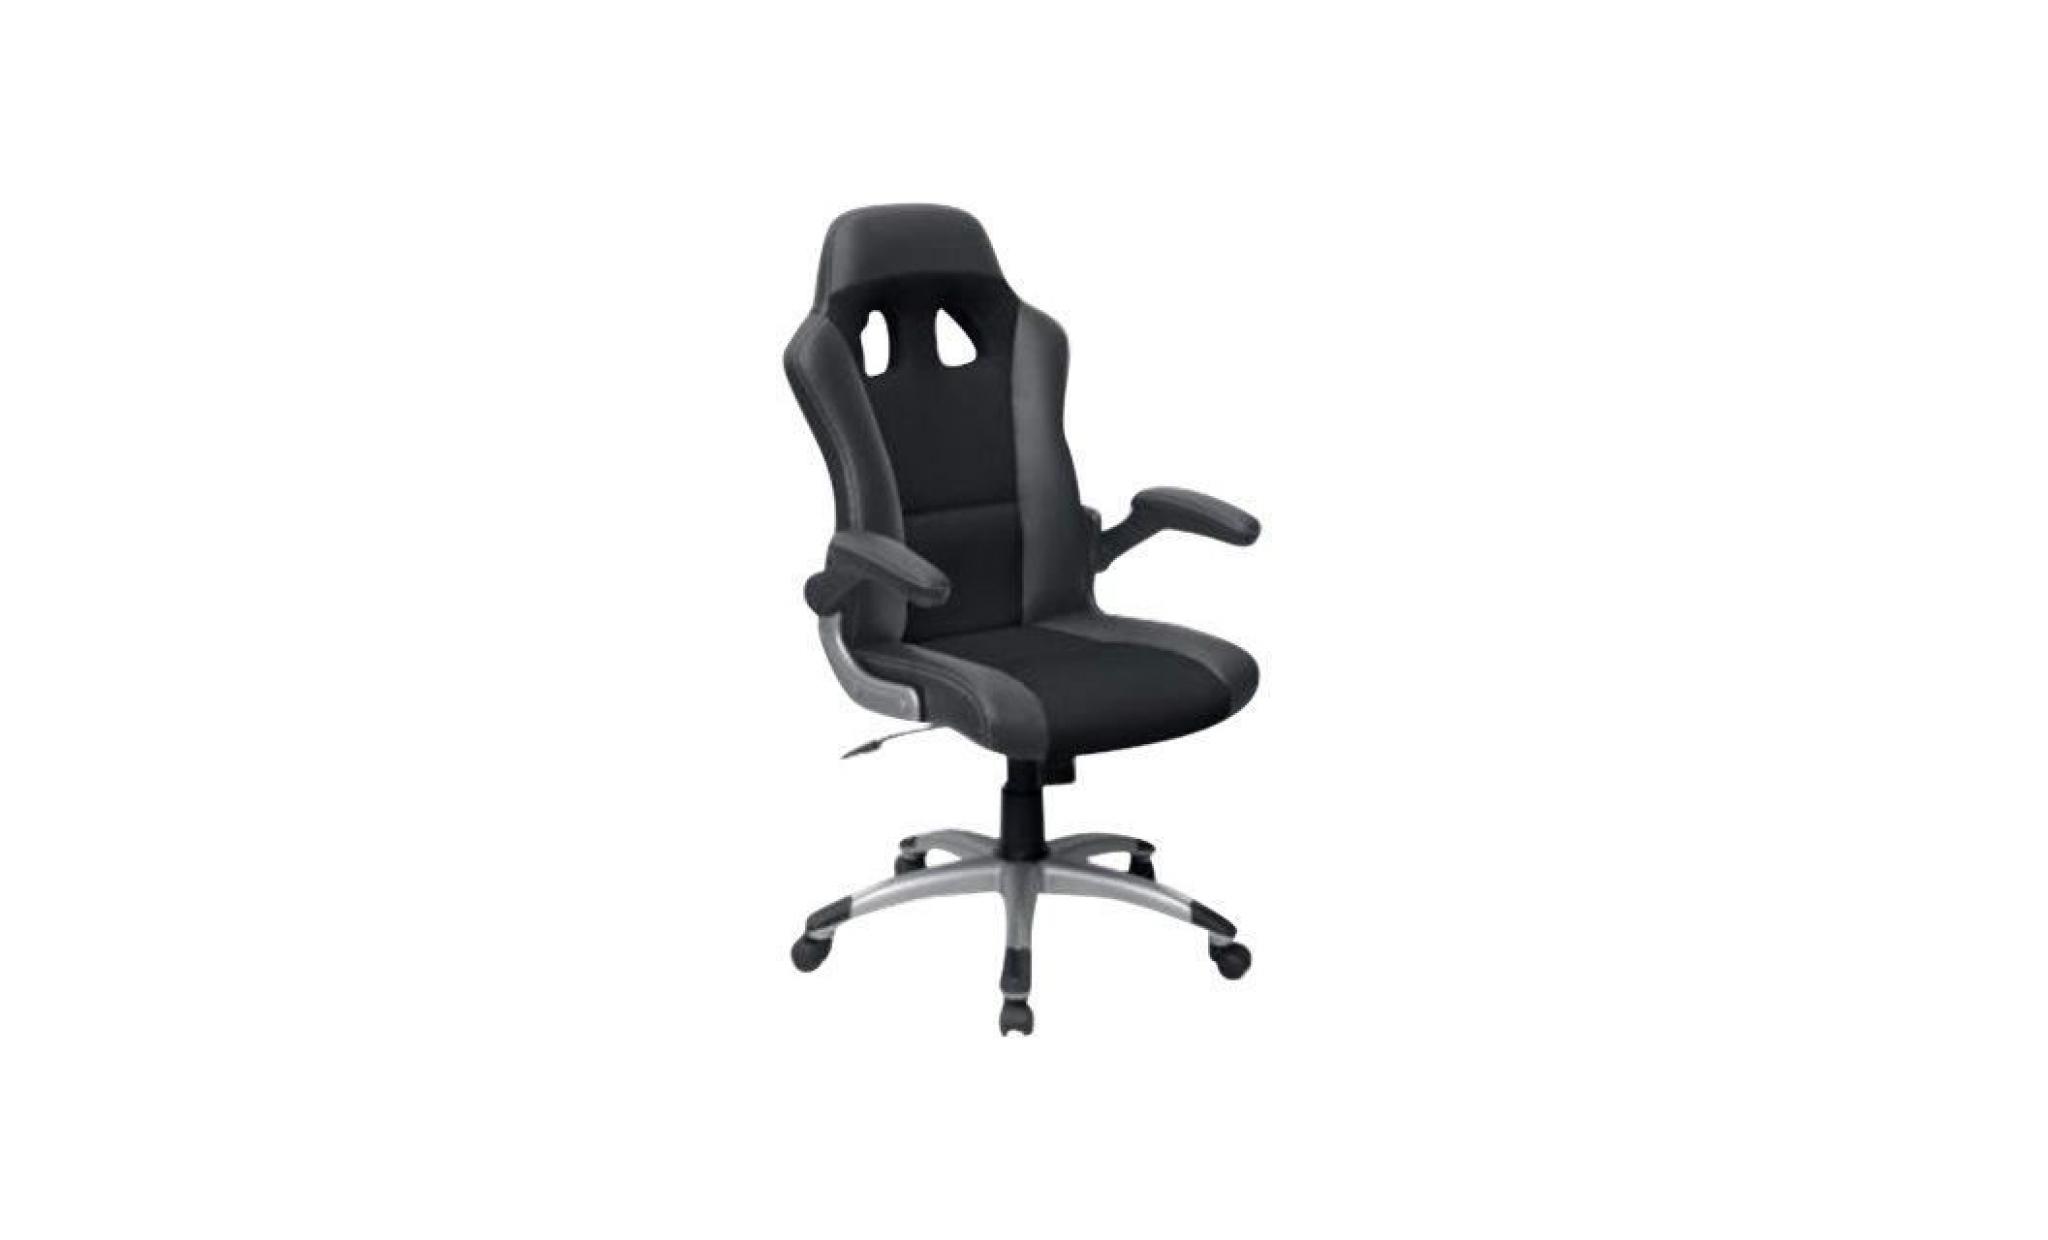 mt mtga 284 chaise ergonomique accoudoirs pivotant nylon, polyuréthane gris, noir